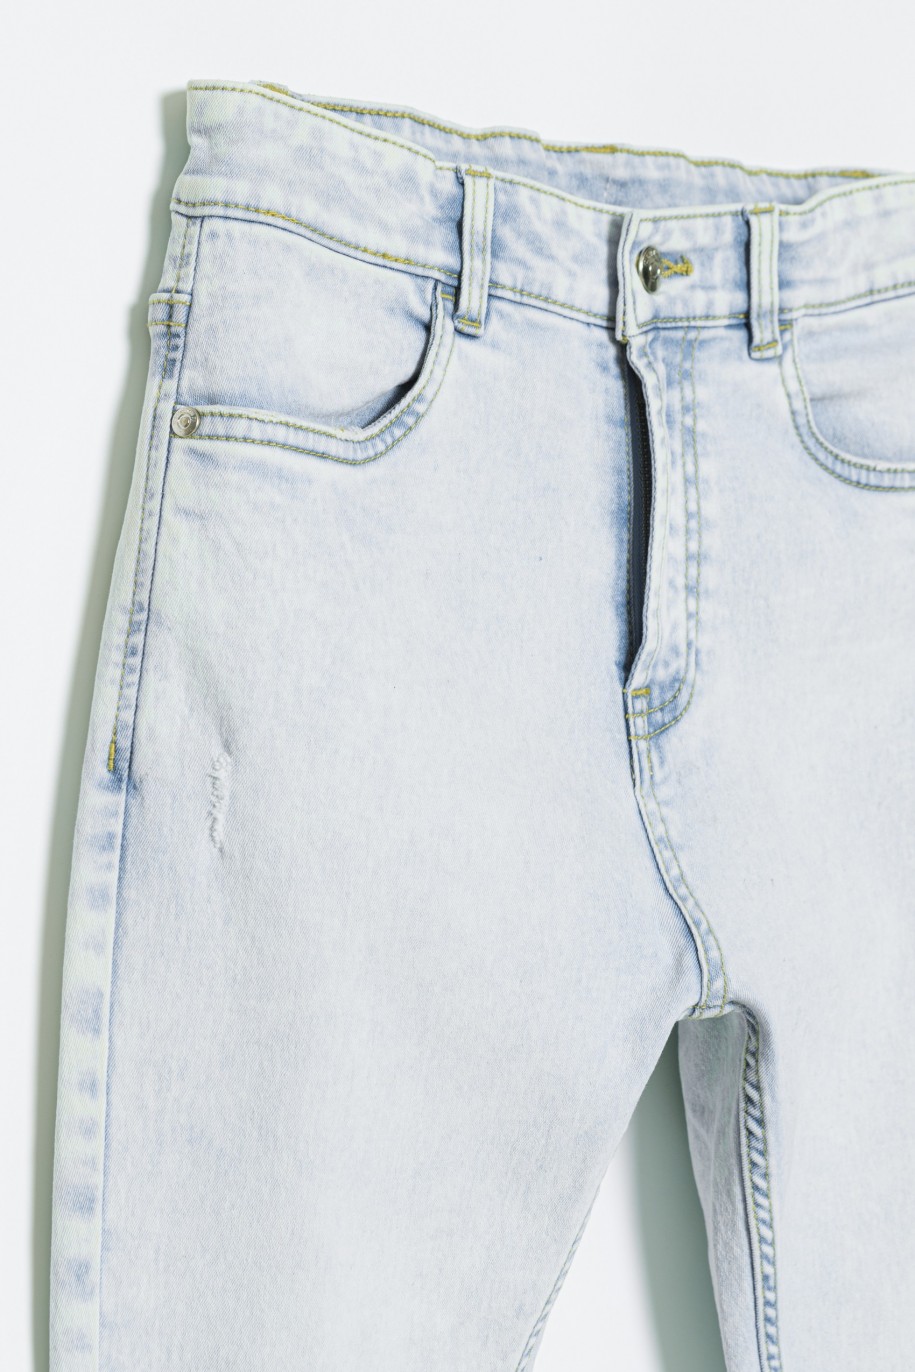 Jasne dopasowane spodnie jeansowe dla dziewczyny - 32567